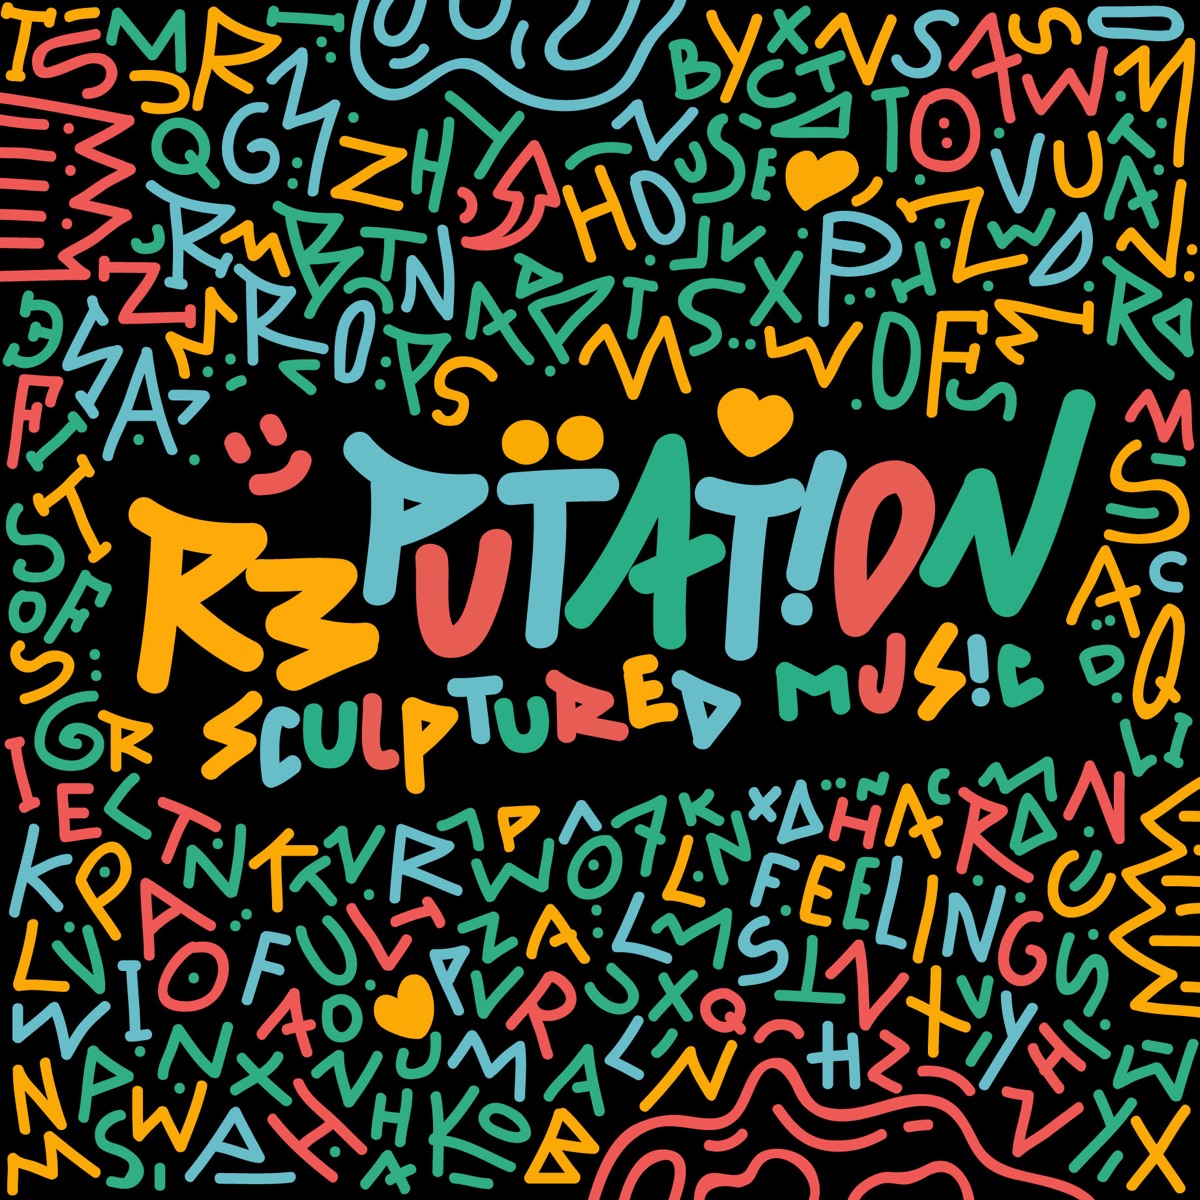 Reputation by SculpturedMusic | Album